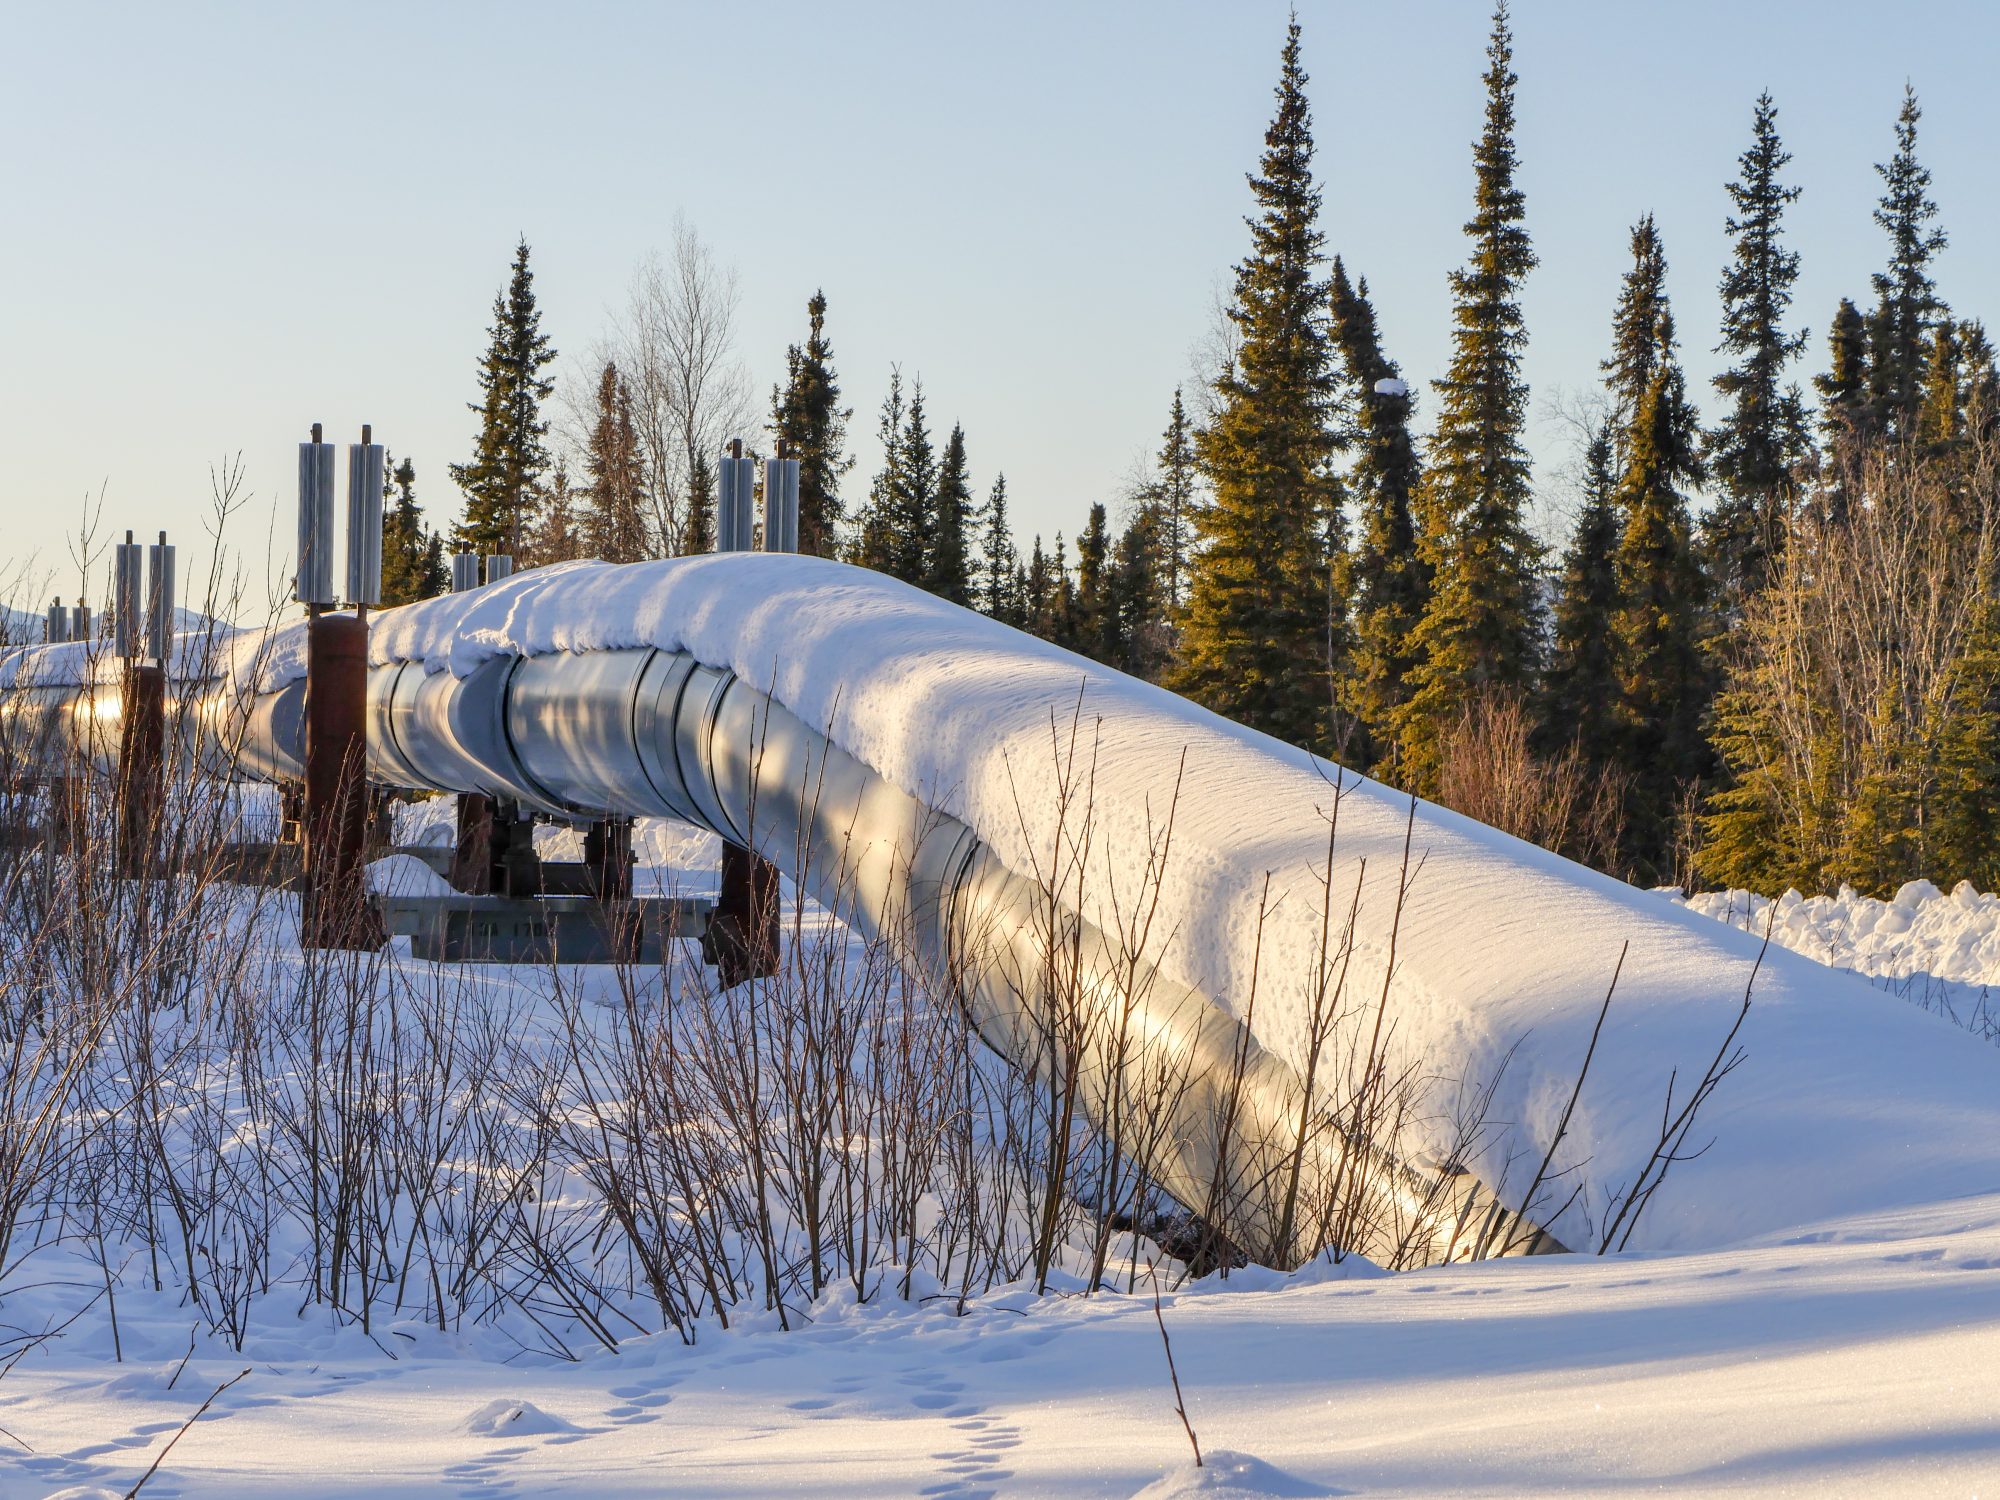 Trans-Alaska Pipeline System in Winter